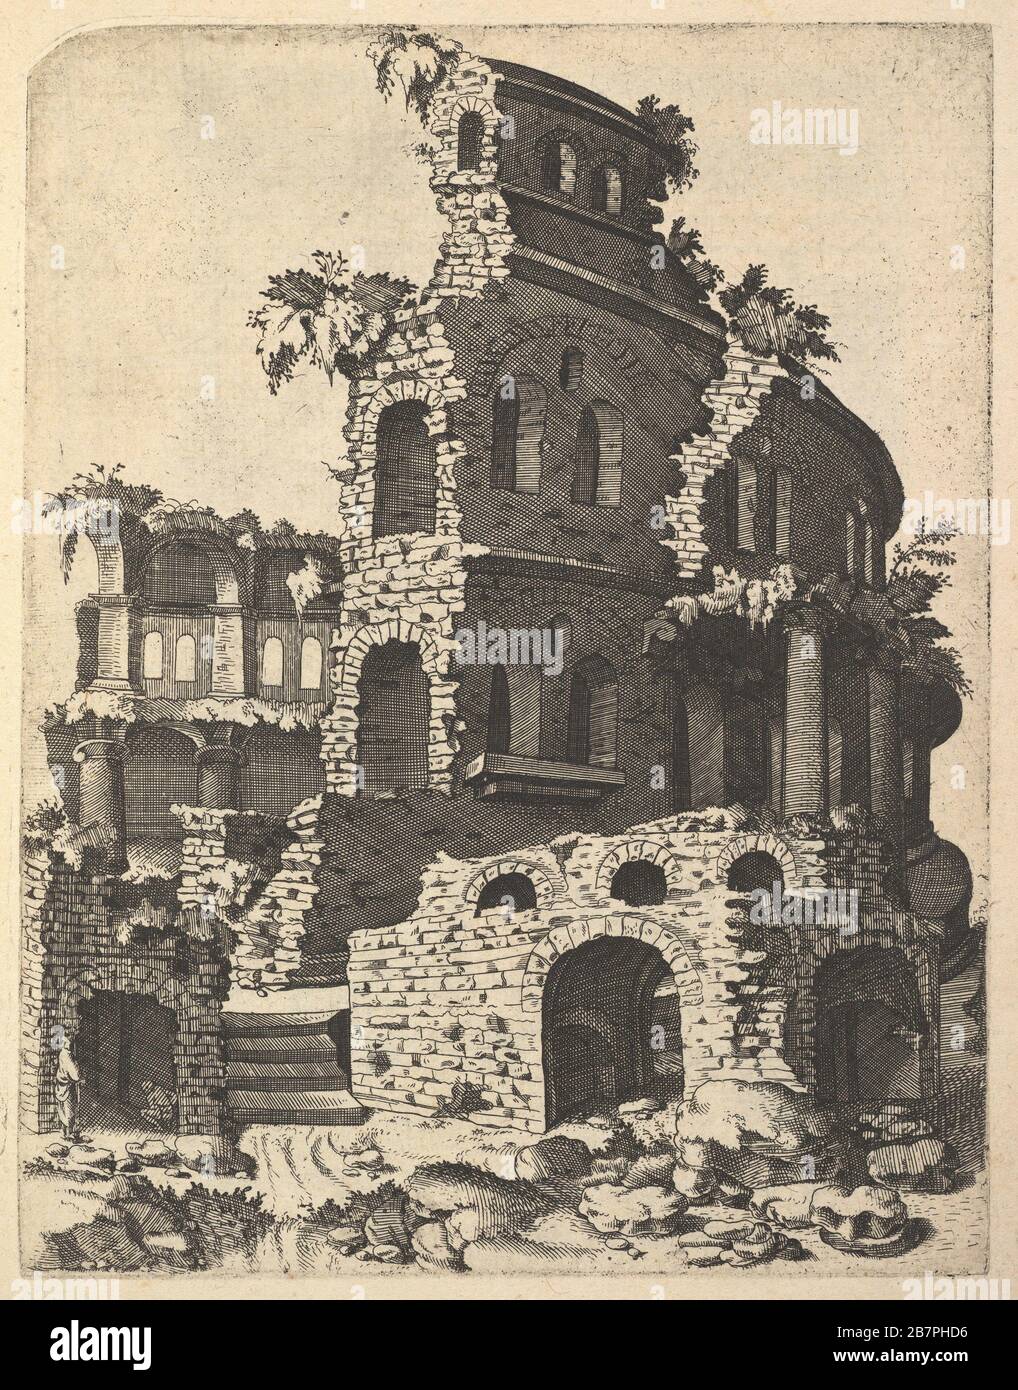 Ruins of a Basilica (?) from the series 'Ruinarum variarum fabricarum delineationes pictoribus caeterisque id genus artificibus multum utiles', 1554. Stock Photo